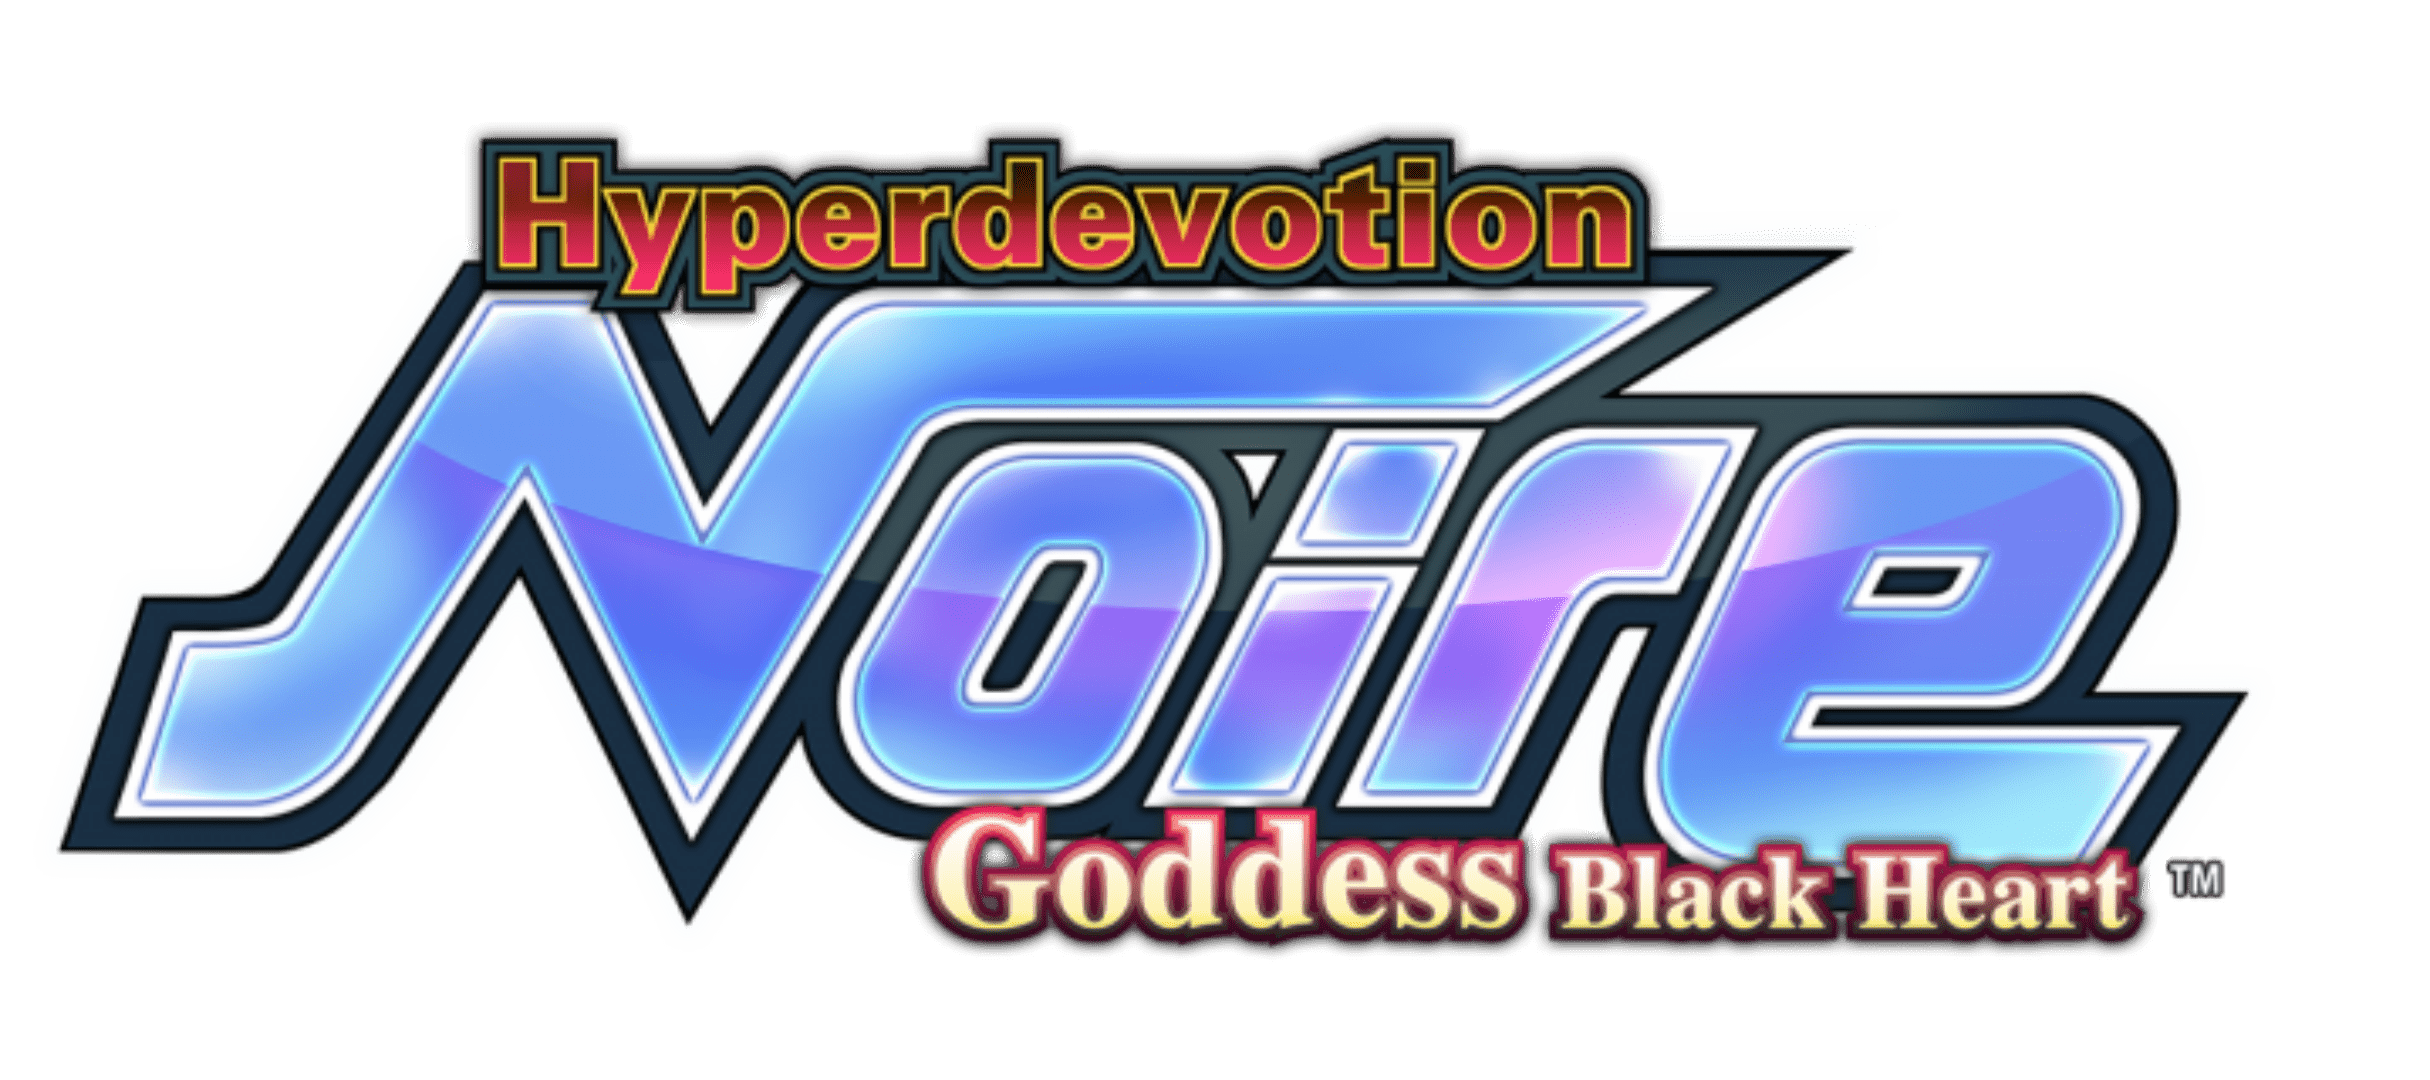 Hyperdevotion Noire­: Goddess Black Heart Release Dates Announced